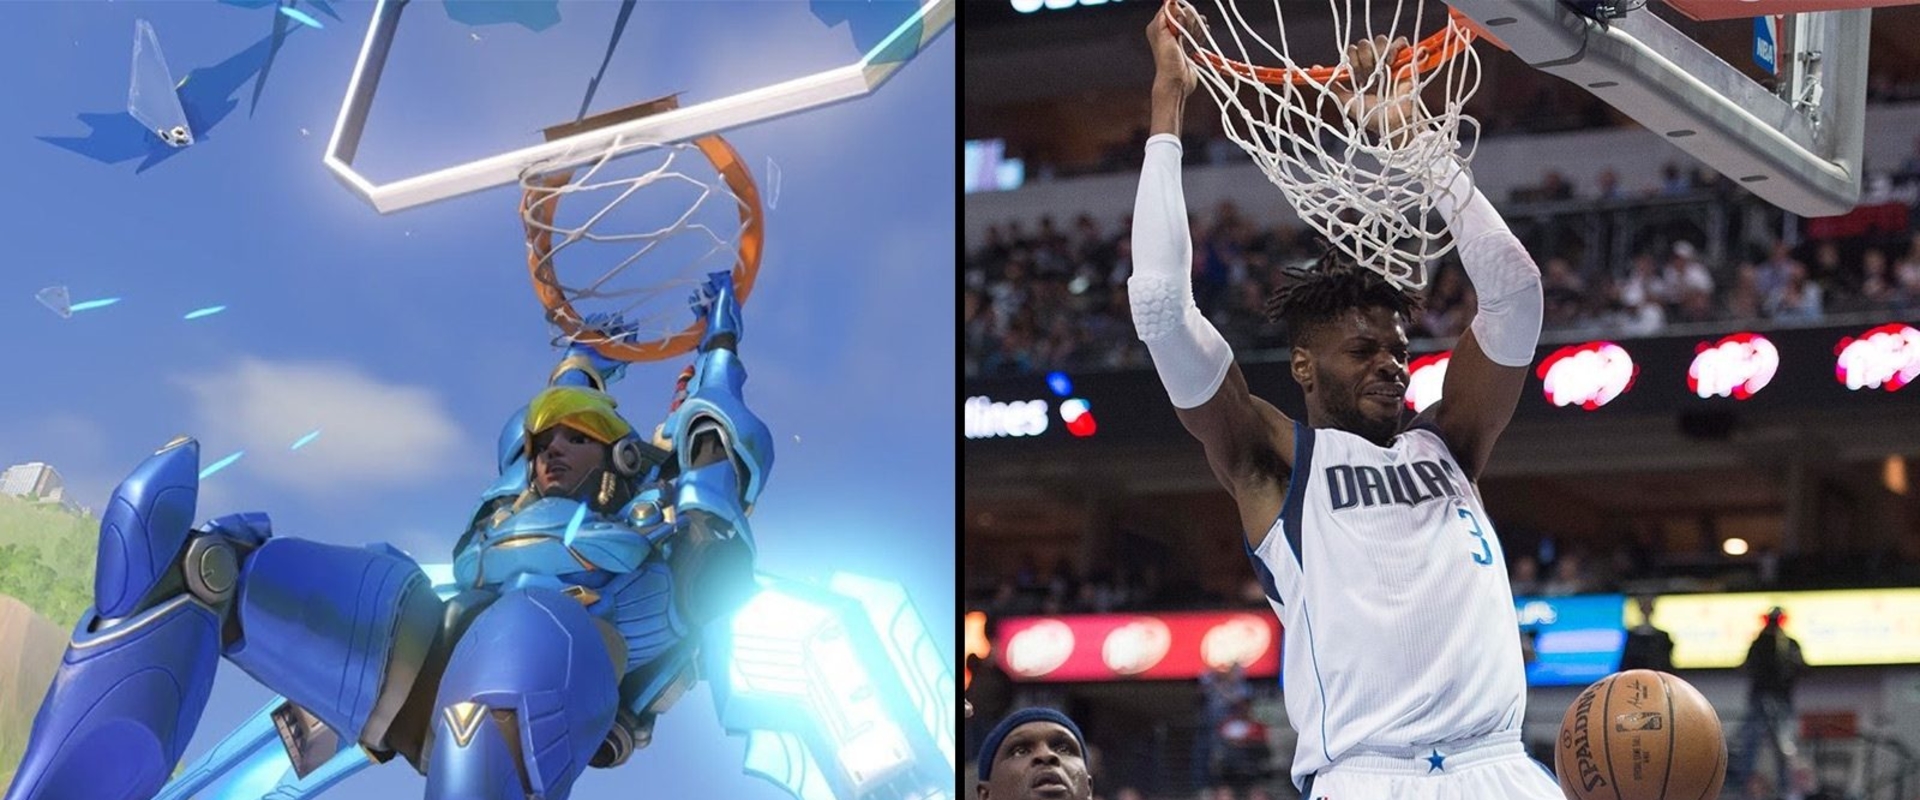 Zseniális Overwatch POTG videót készített a Dallas Mavericks NBA csapatnak egy rajongó